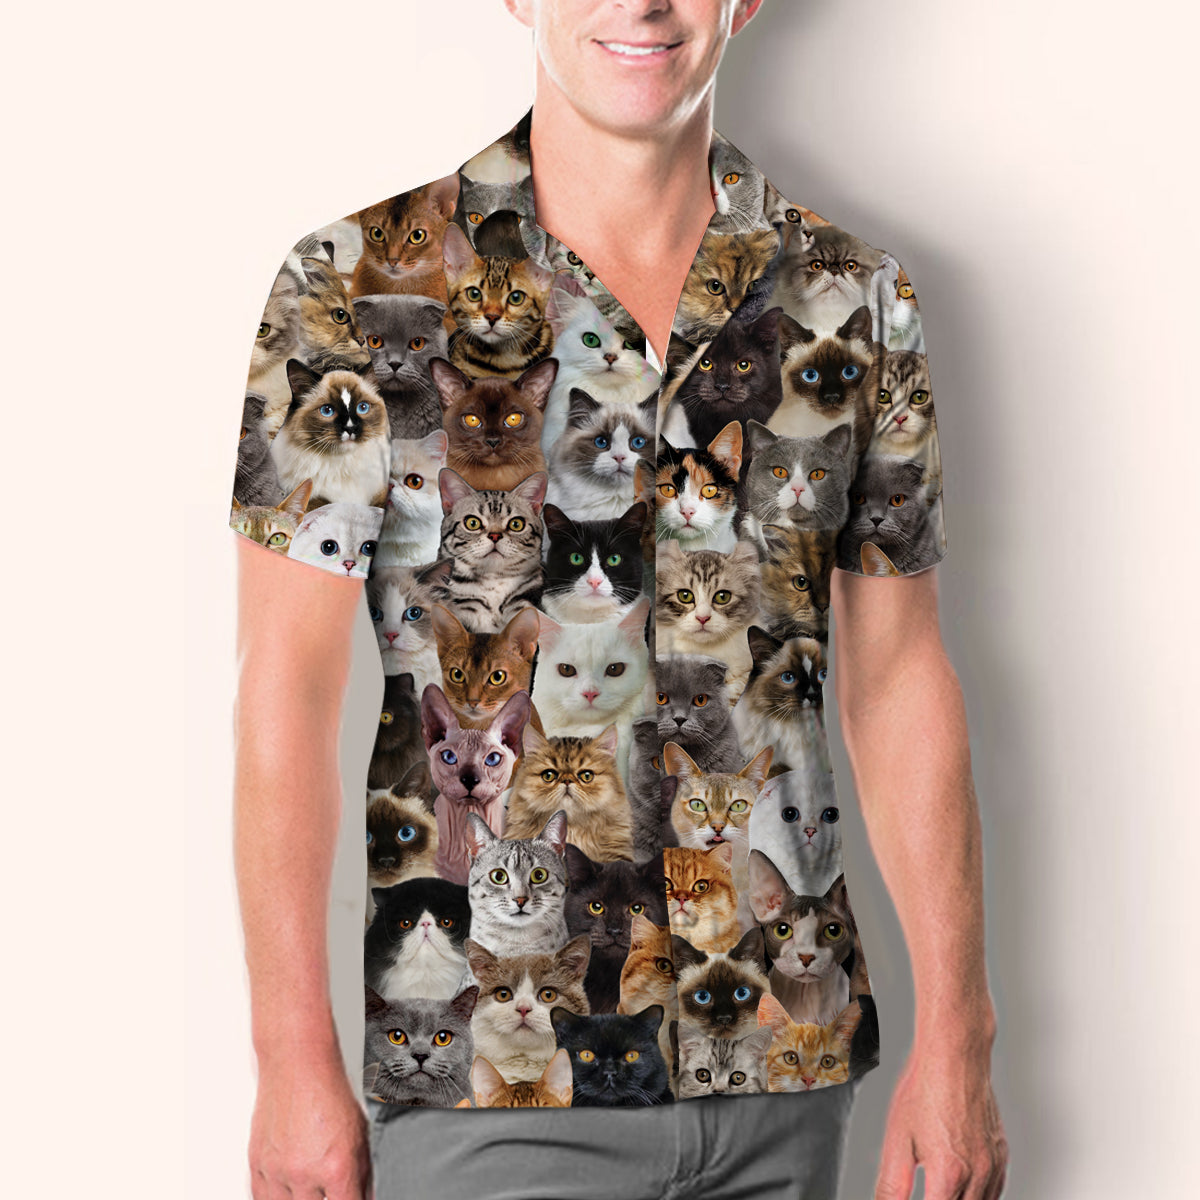 Du wirst einen Haufen Katzen haben - Shirt V1